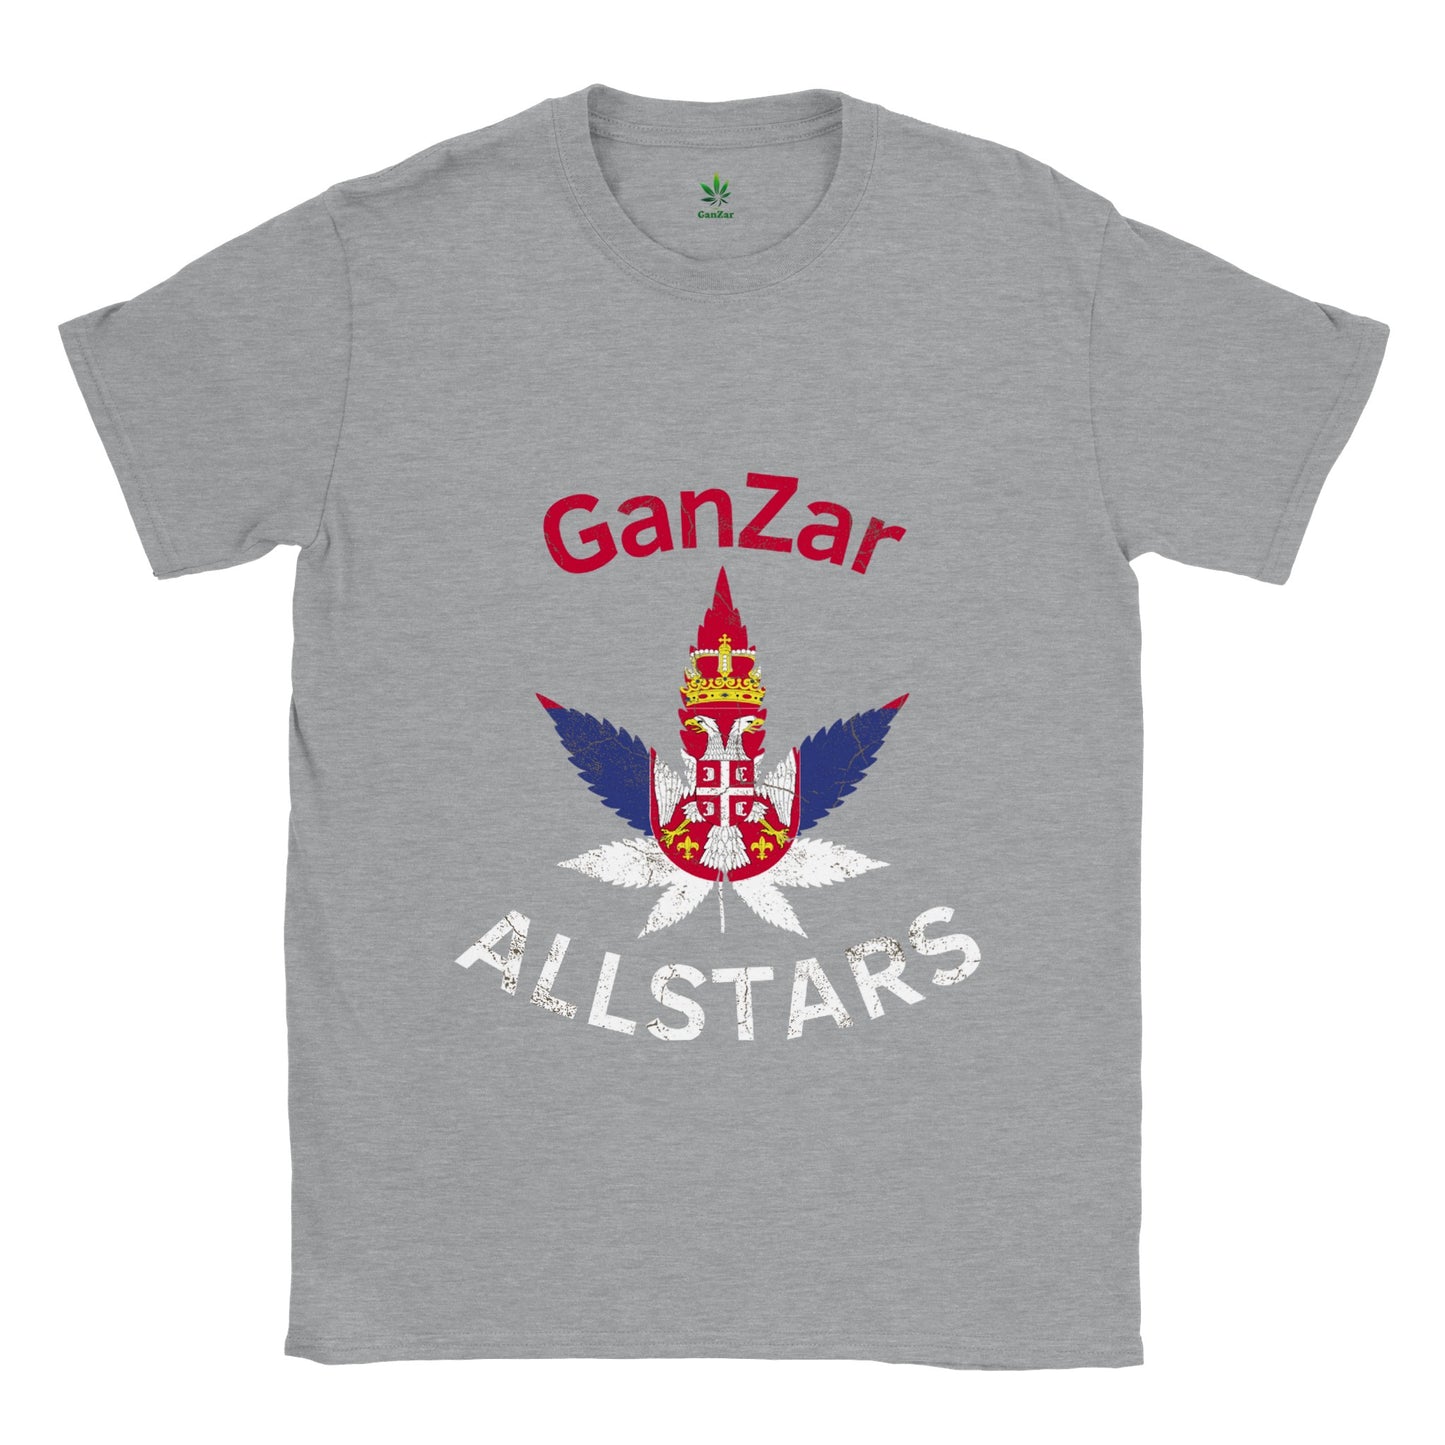 Serbien GanZar Allstars Unisex T-Shirt